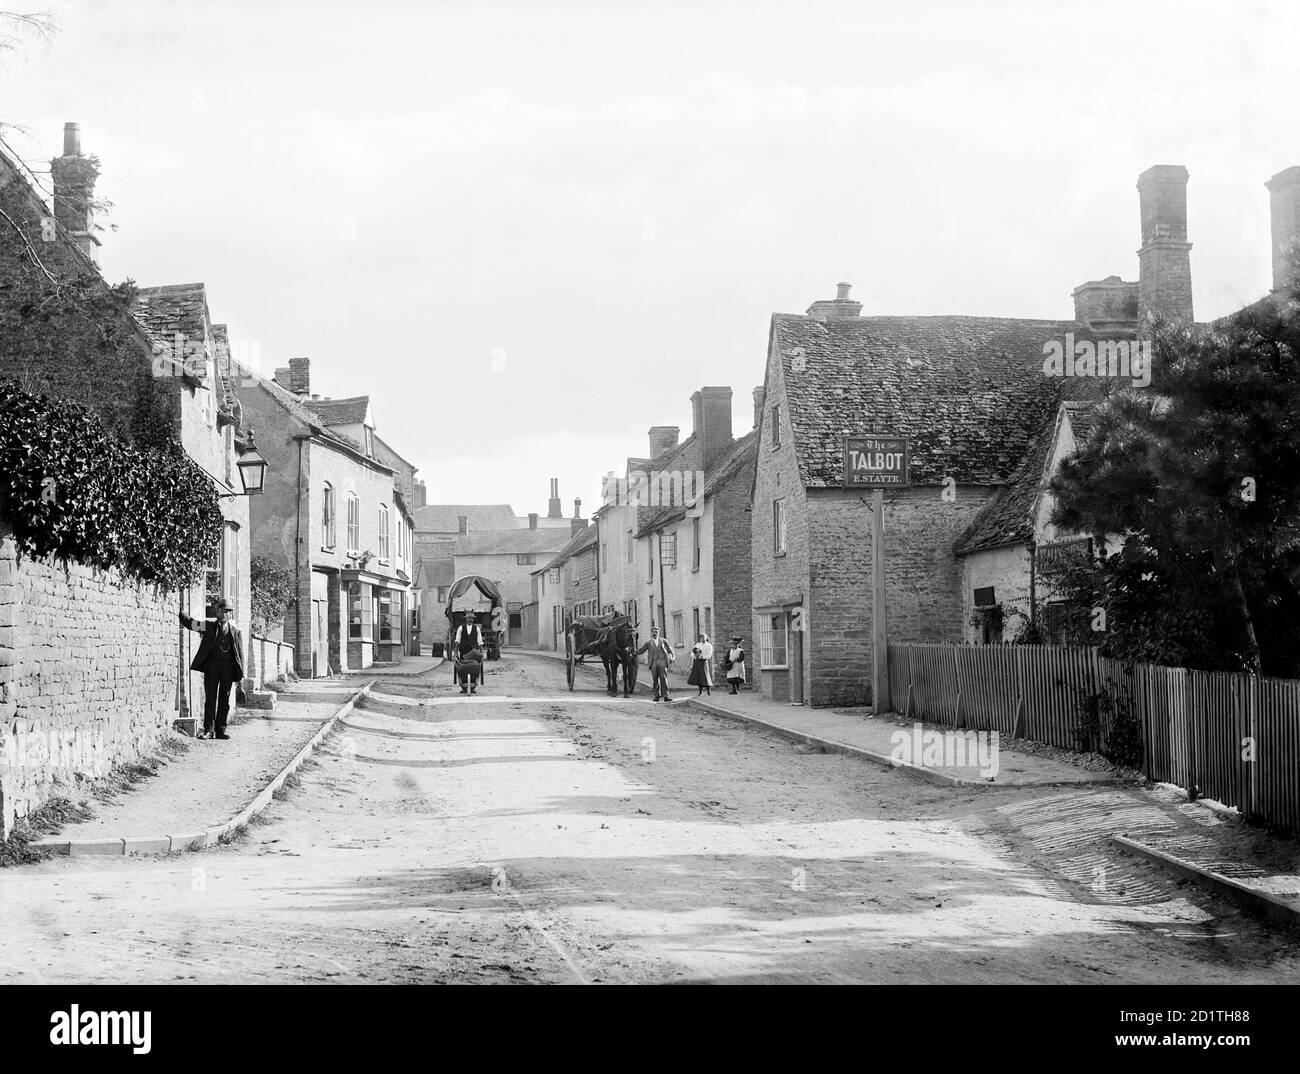 CHARLBURY, Oxfordshire. Eine Straßenszene, die die Thames Street mit mehreren Einwohnern zeigt, einer mit einer Schubkarre, die in der Nähe des öffentlichen Hauses Talbot steht. Fotografiert von Henry Taunt (aktiv 1860 - 1922). Stockfoto